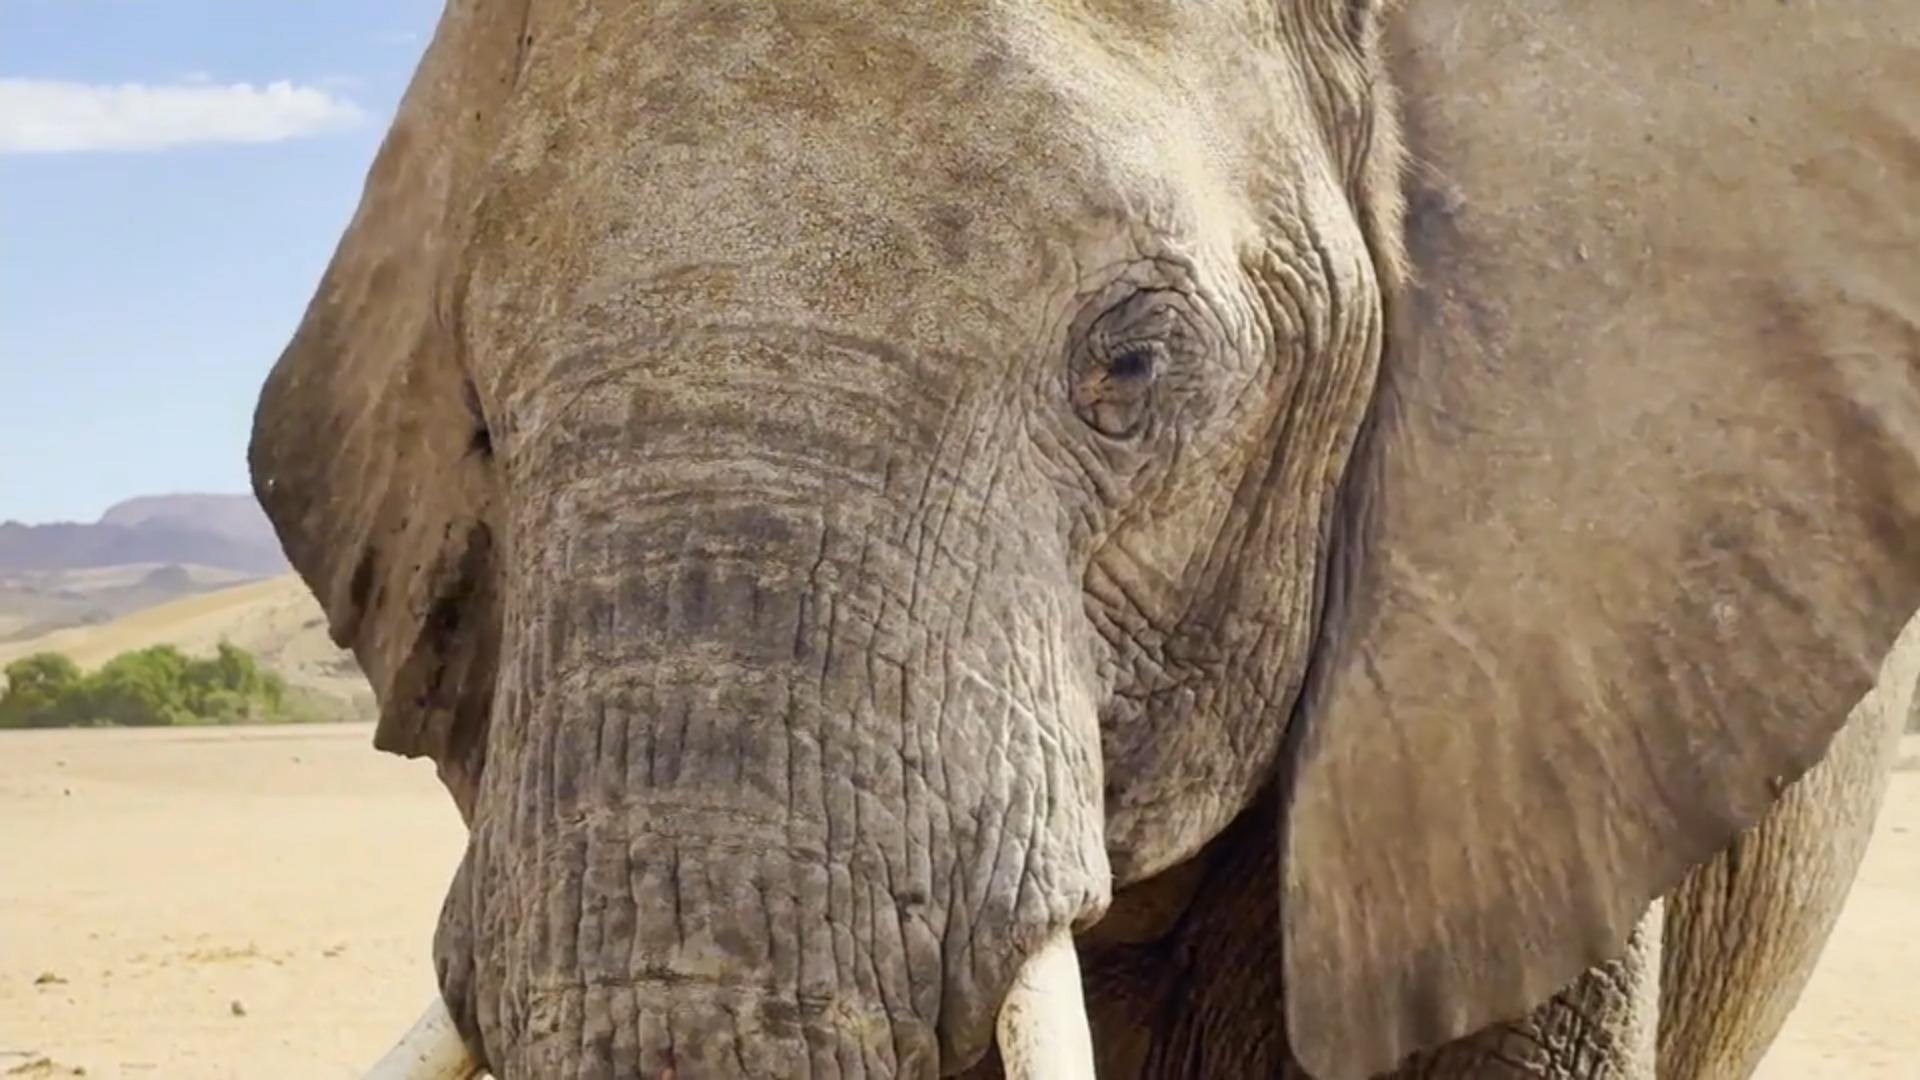 Leben der Wüstenelefanten im Einklang mit indigenem Volk Wüstenelefanten in Namibia